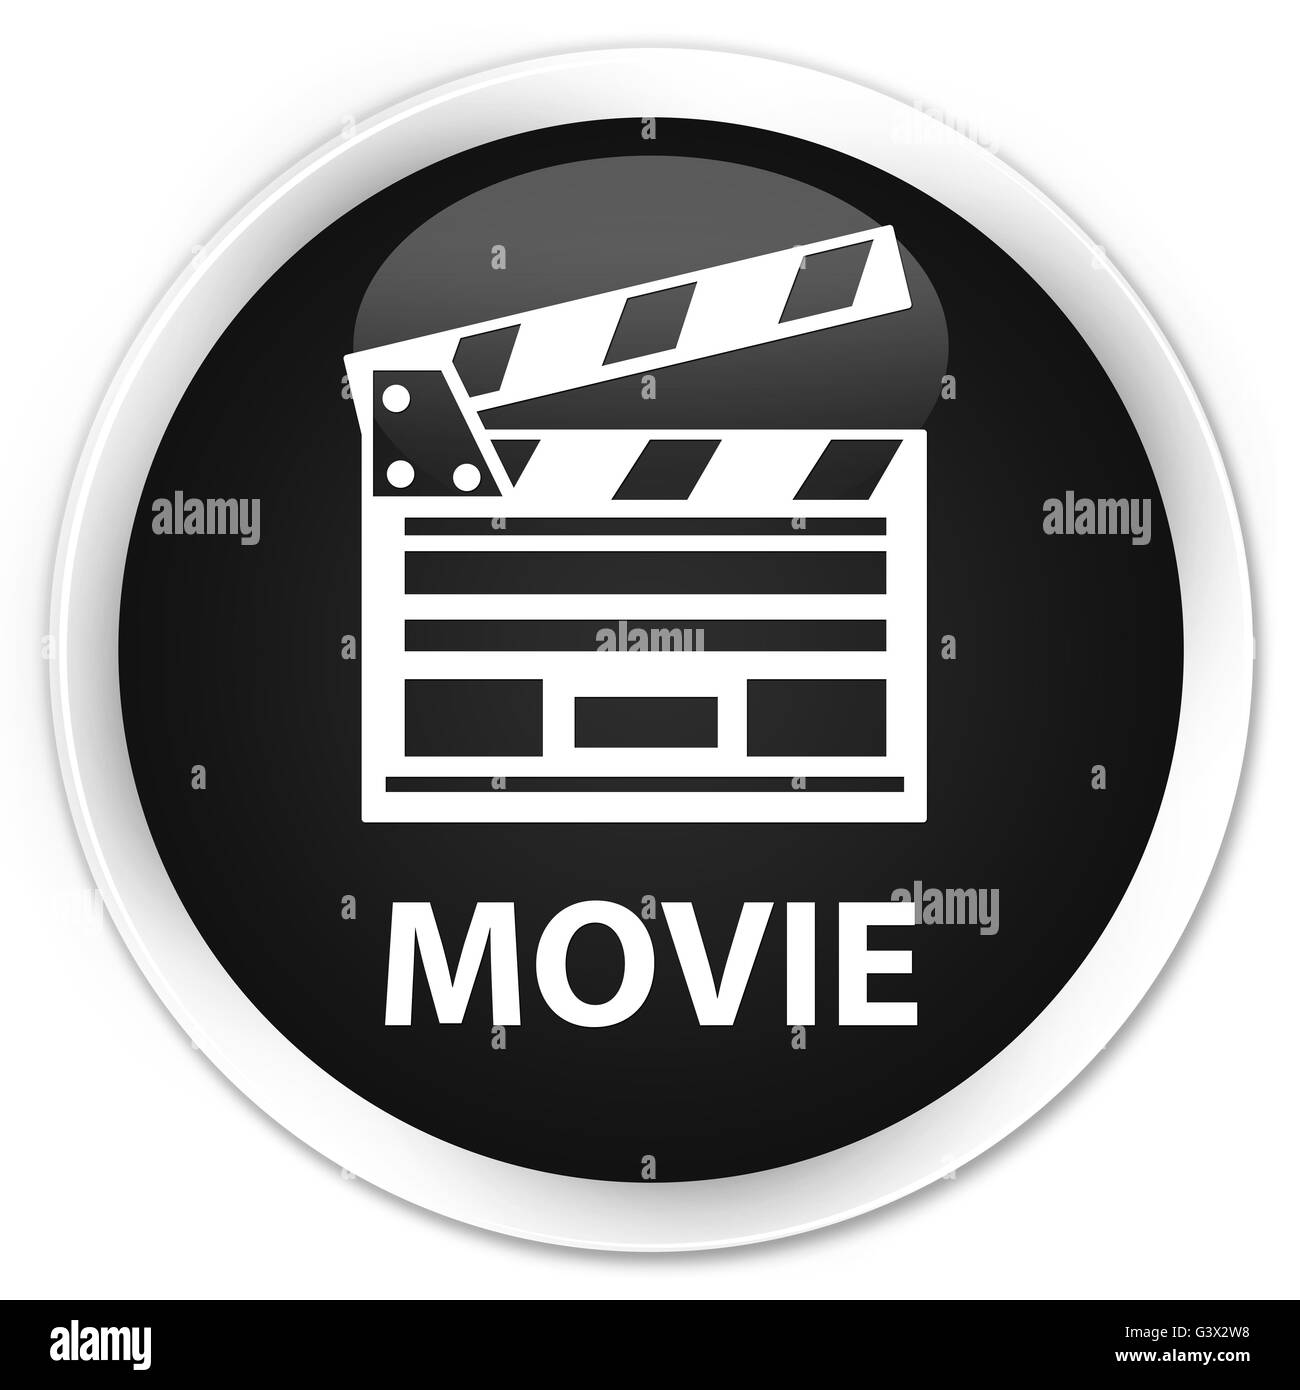 Cinéma (film) l'icône clip isolé sur le bouton rond noir premium abstract illustration Banque D'Images